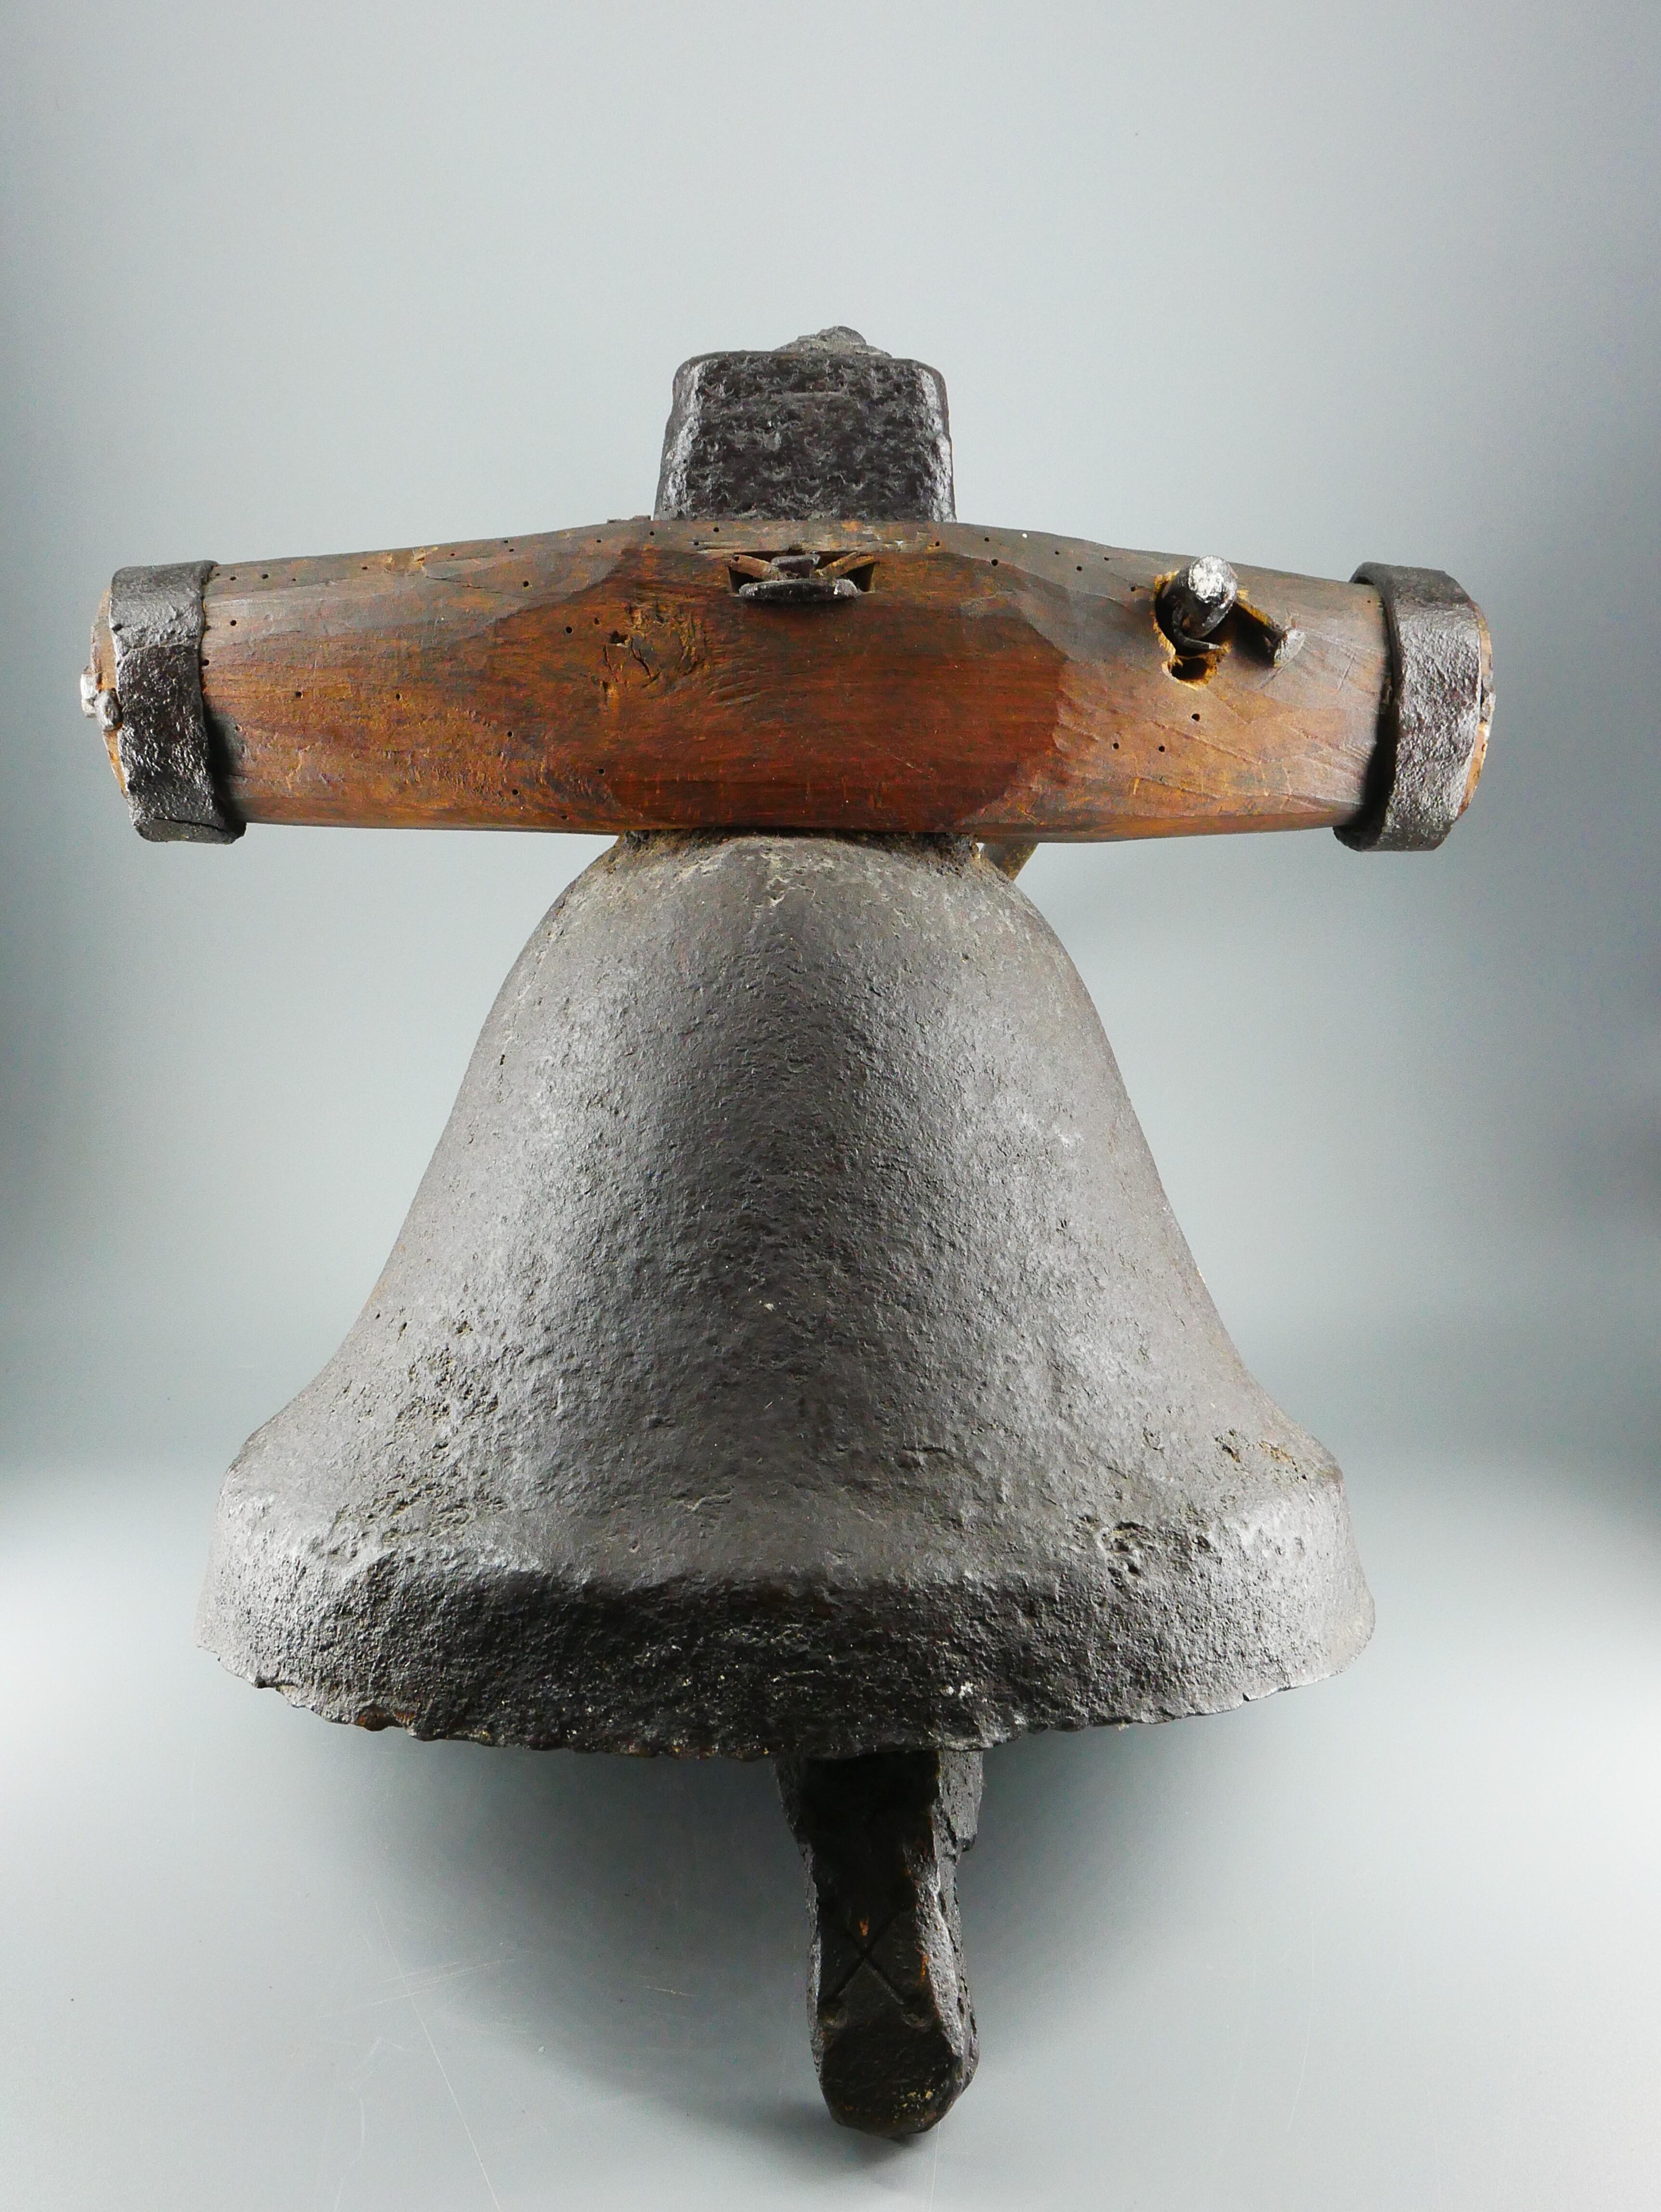 Gusseiserne Glocke mit Joch (Westfälisches Glockenmuseum Gescher CC BY-NC-SA)